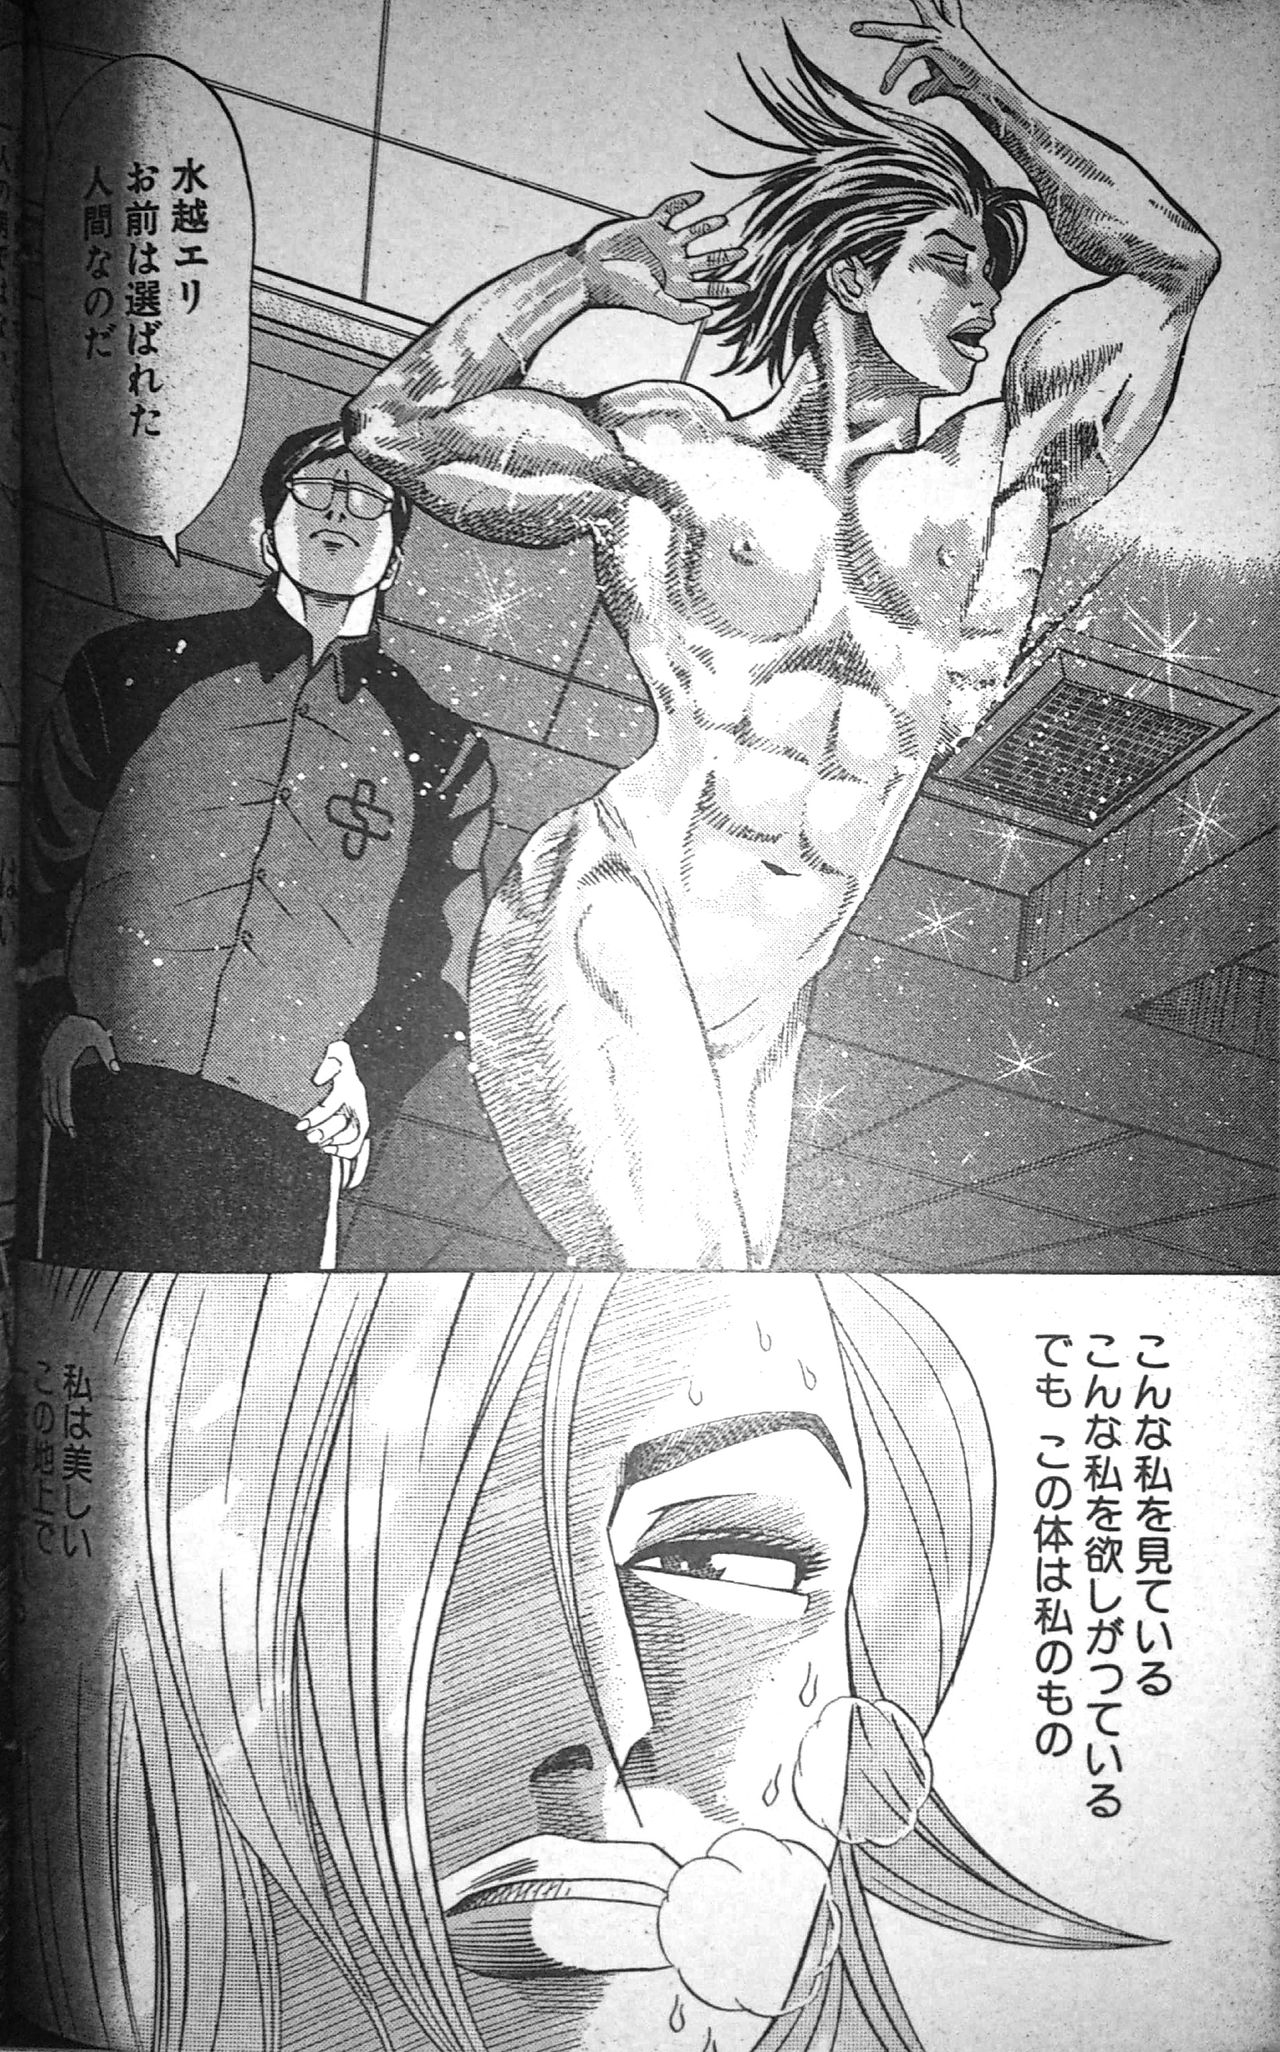 [冬木真人] マッスルストロベリー Chapter 2 (コミックバウンド 2000年10月24日)